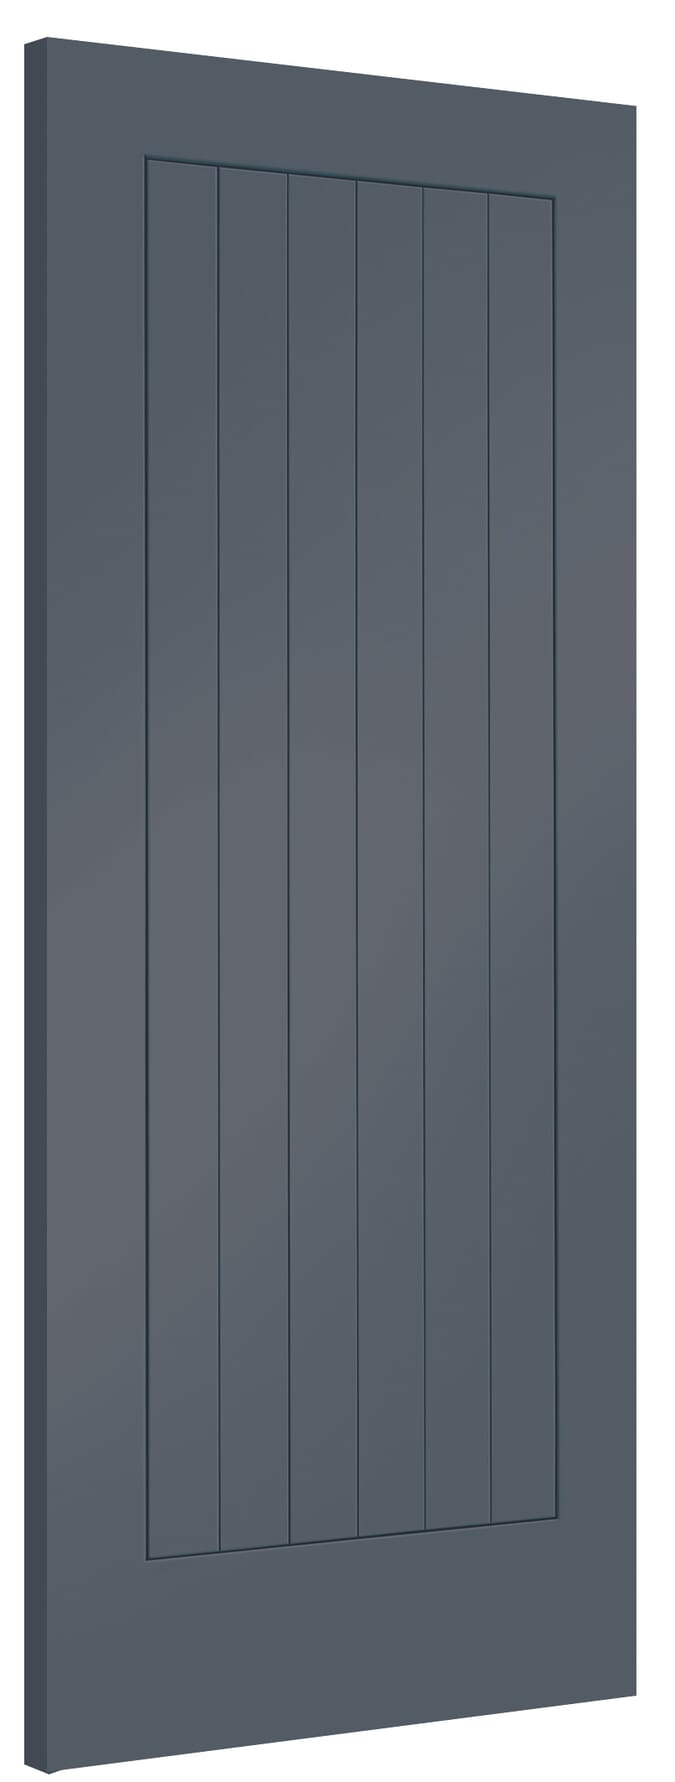 533x1981x35mm (21") Suffolk Cinder Grey Internal Doors